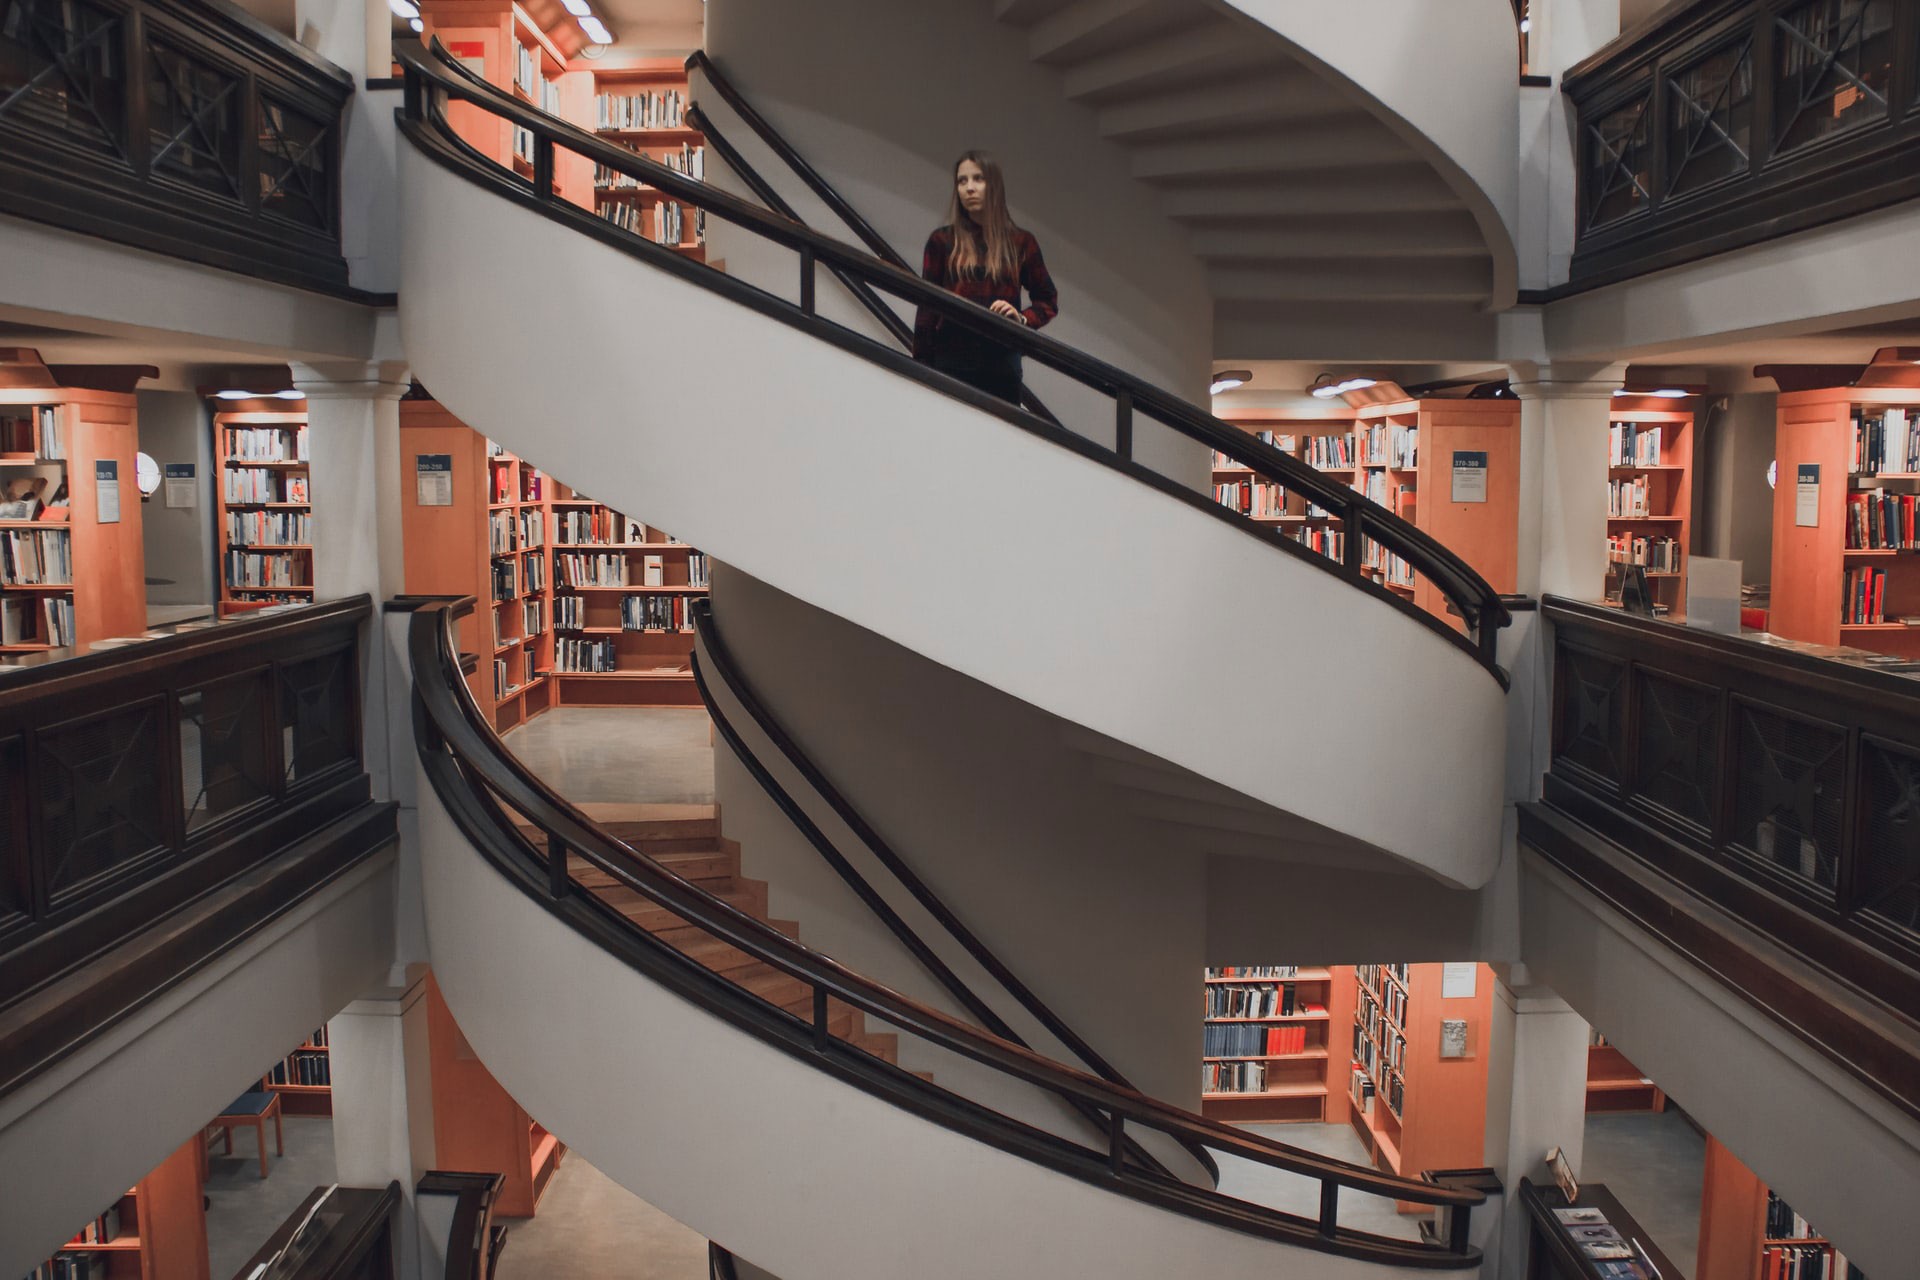 Helsinki'de bir kütüphanenin merdivenlerinde duran bir kadın